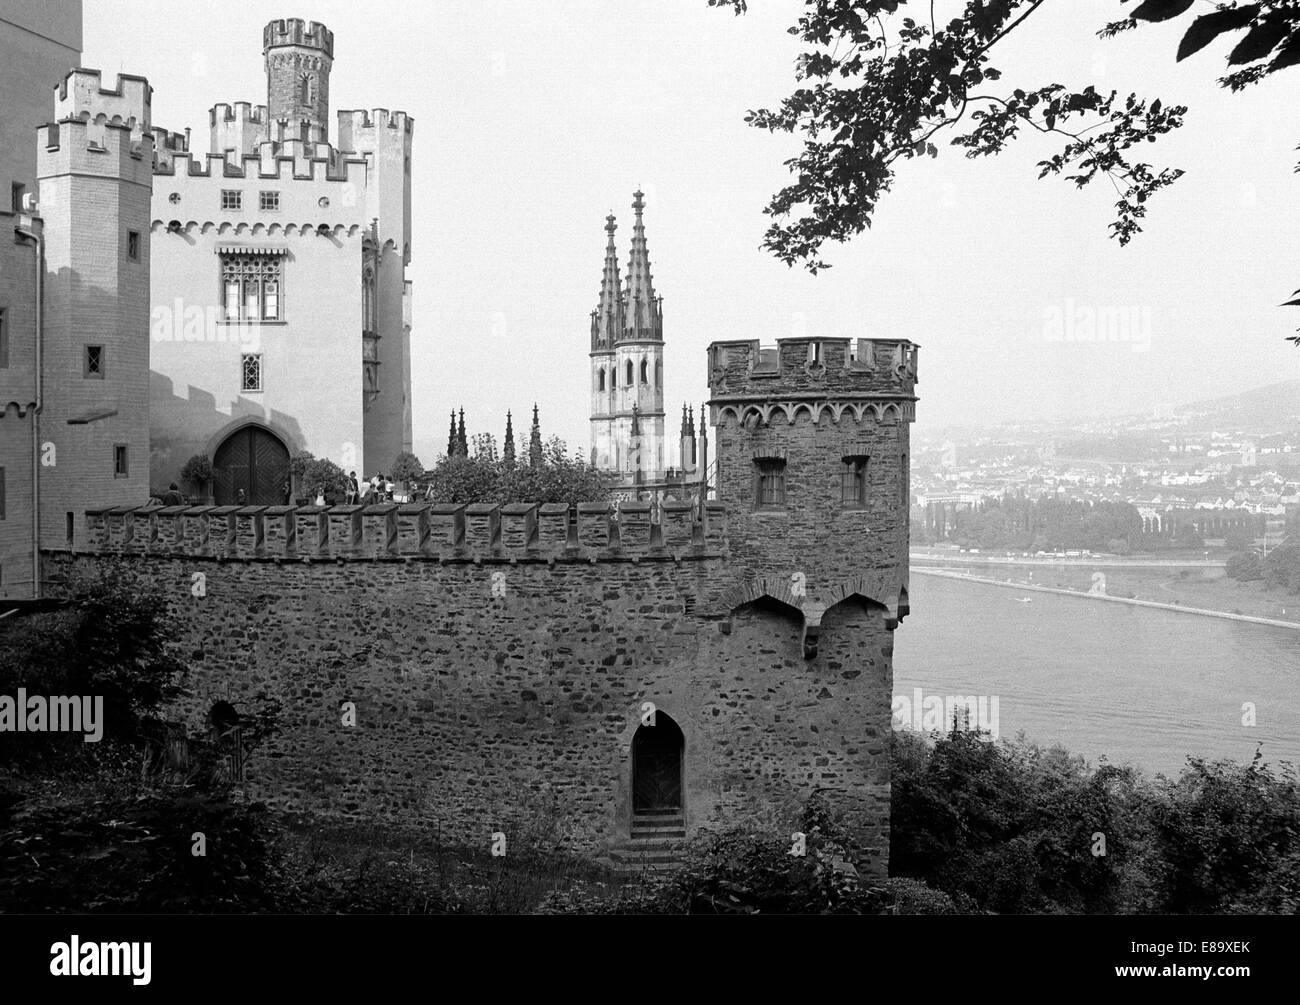 Achtziger Jahre, UNESCO Weltkulturerbe Oberes Mittelrheintal, Schloss Stolzenfels in Koblenz, Rhein, Mosel, Rheinland-Pfalz Stock Photo